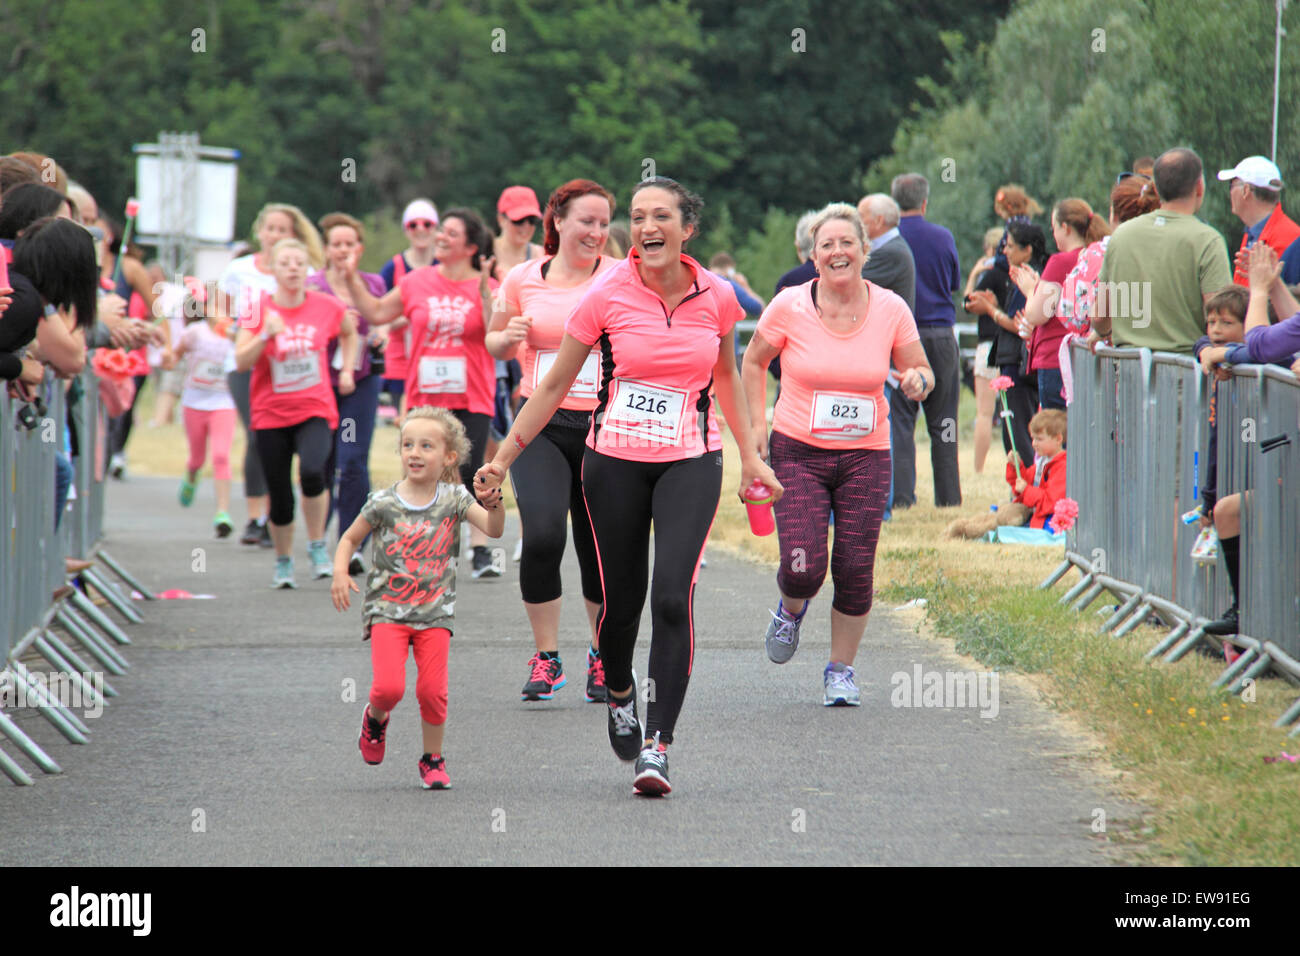 Nähert sich der Ziellinie am "Race for LIfe" nur für Frauen Spendenaktionen Laufveranstaltung für Cancer Research UK. 20. Juni 2015. Kempton Park Rennbahn, Staines Road East, Sunbury am Thames, Middlesex, England, Großbritannien, Deutschland, UK, Europa. Bildnachweis: Ian Bottle / Alamy Live News Stockfoto